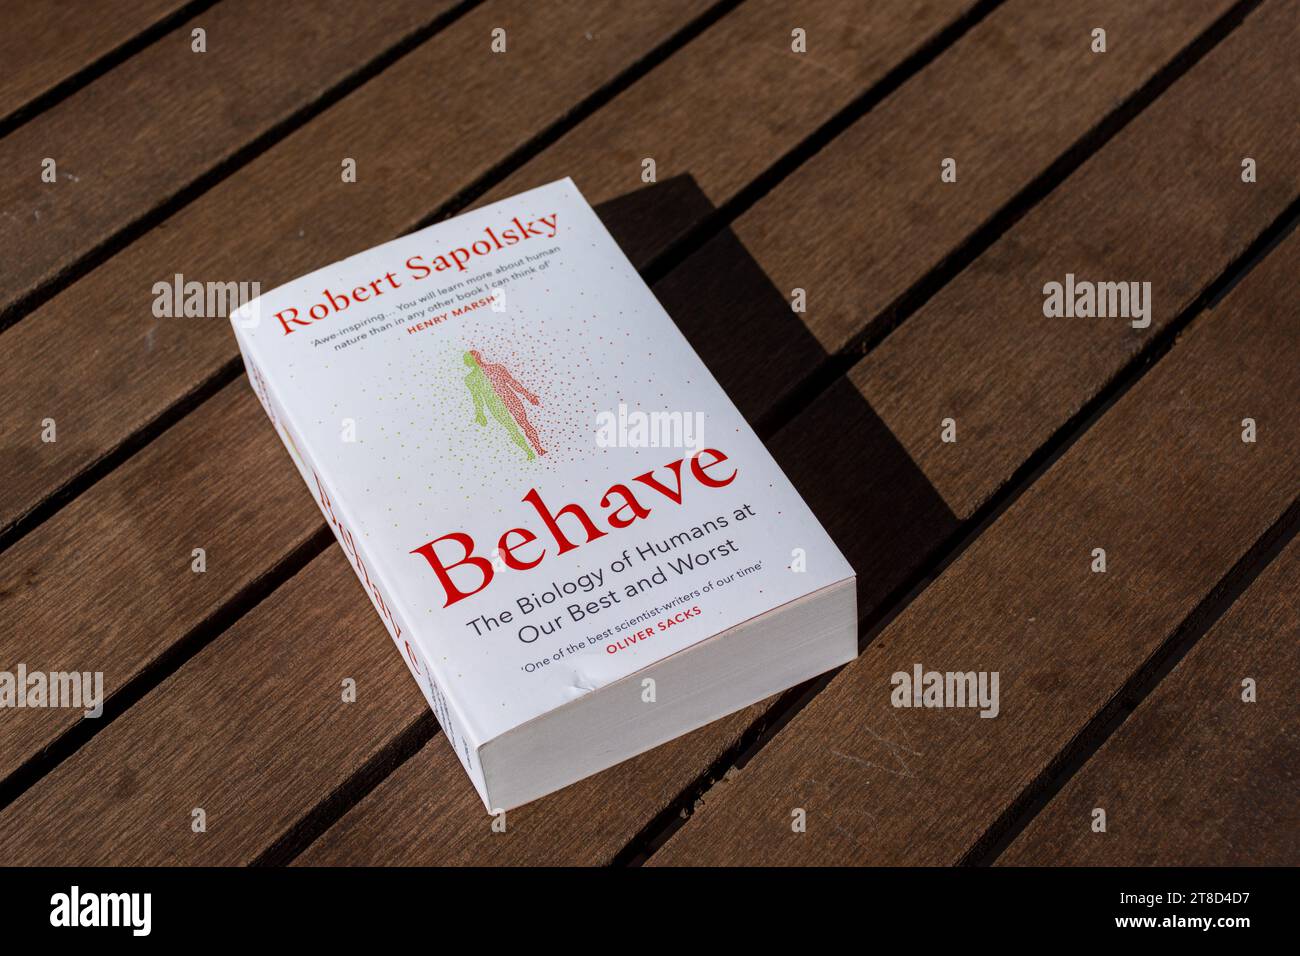 Gros plan le livre de comportement de Robert Sapolsky sur une table en bois. Banque D'Images